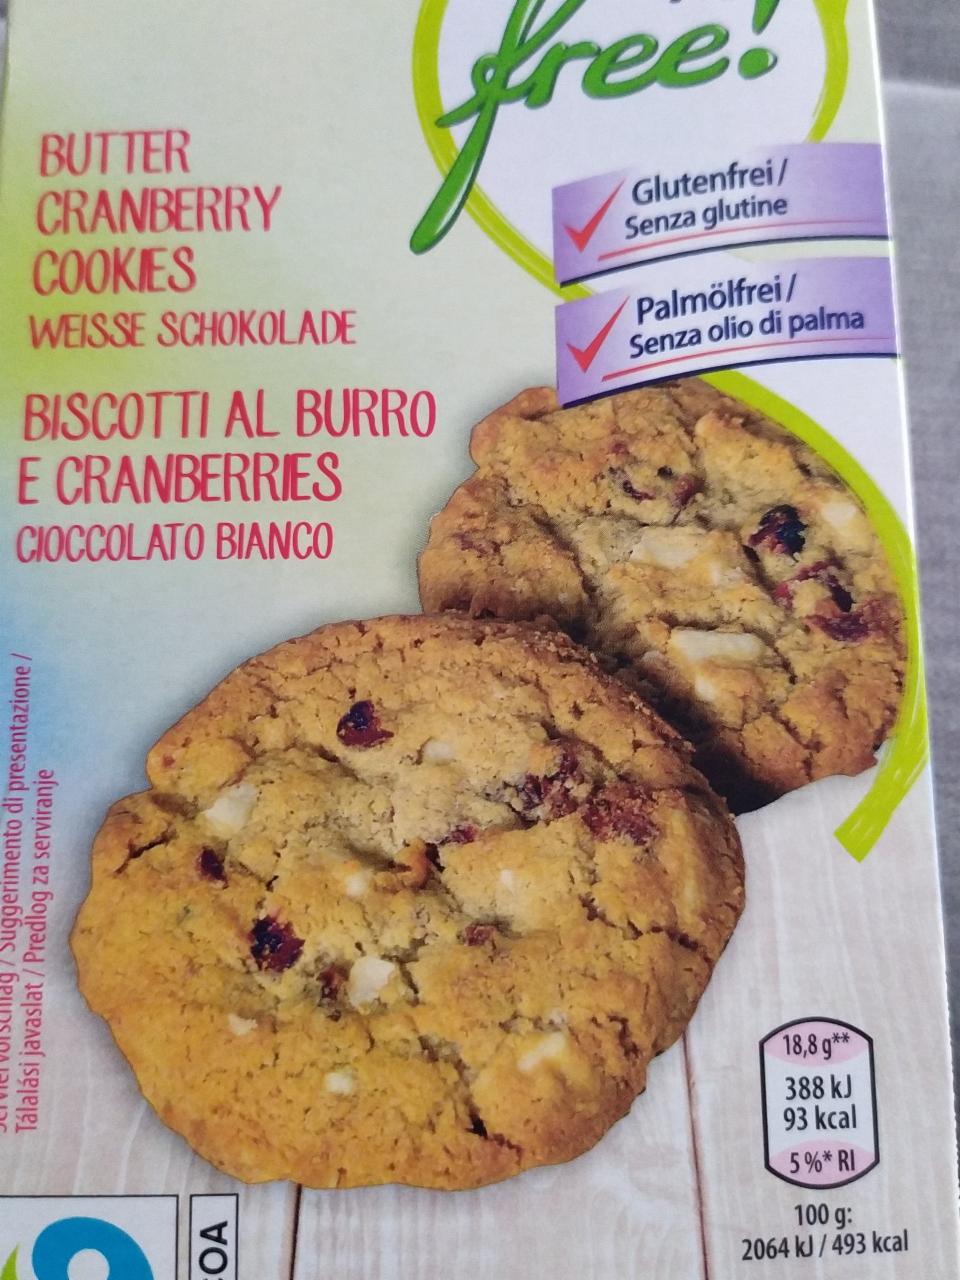 Fotografie - Butter cranberry cookies weisse schokolade Enjoy Free